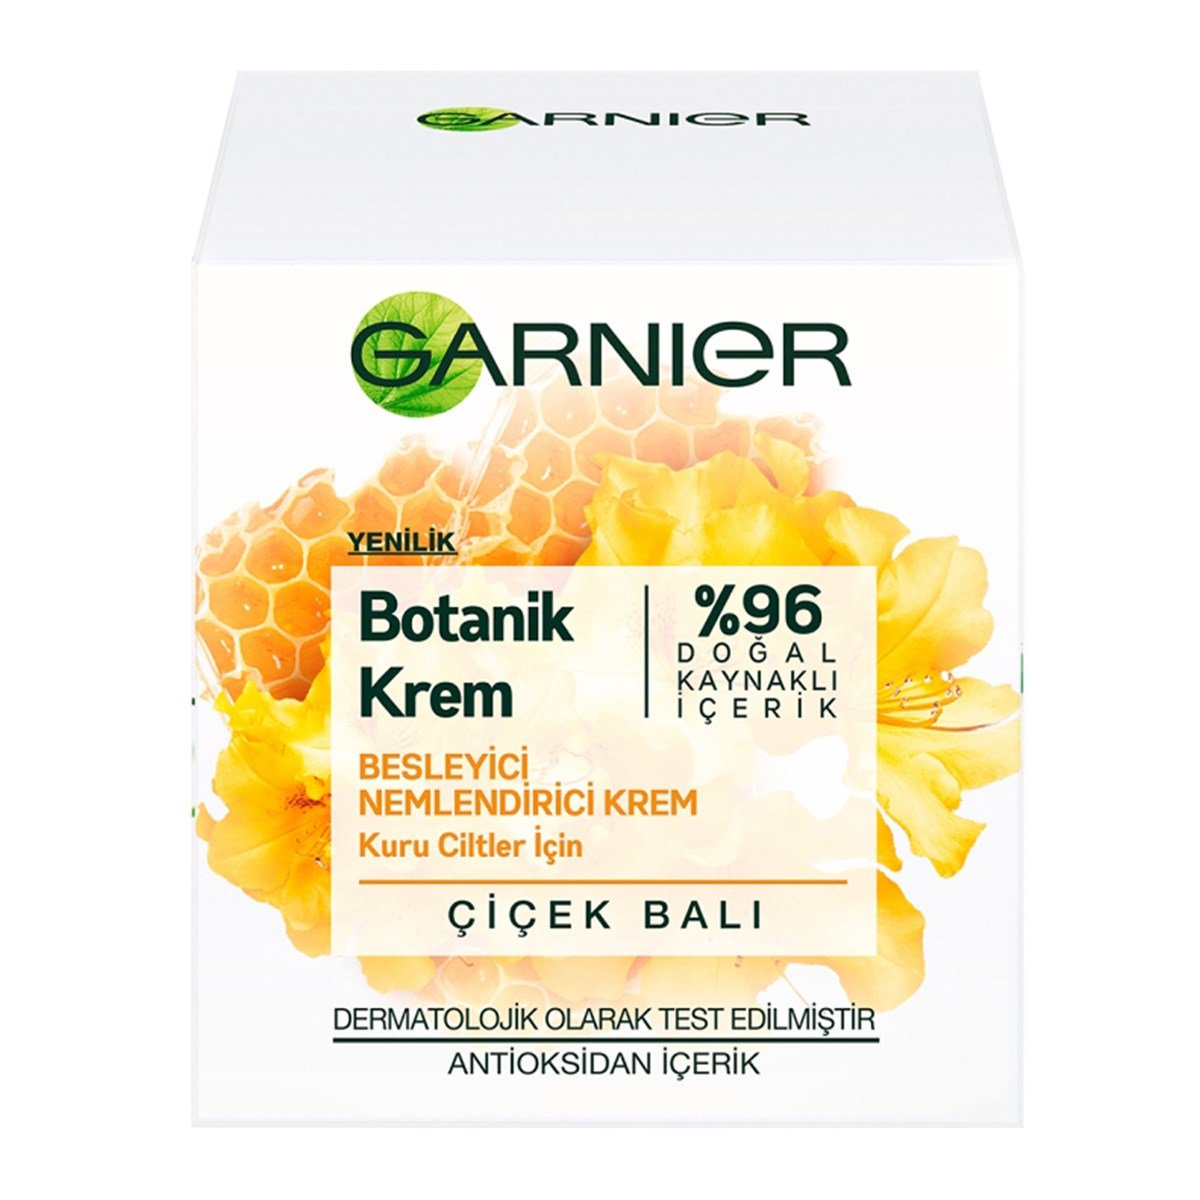 Garnier Botanik Krem Besleyici Nemlendirici Kuru Ciltler İçin Çiçek Balı  50ml - Platin